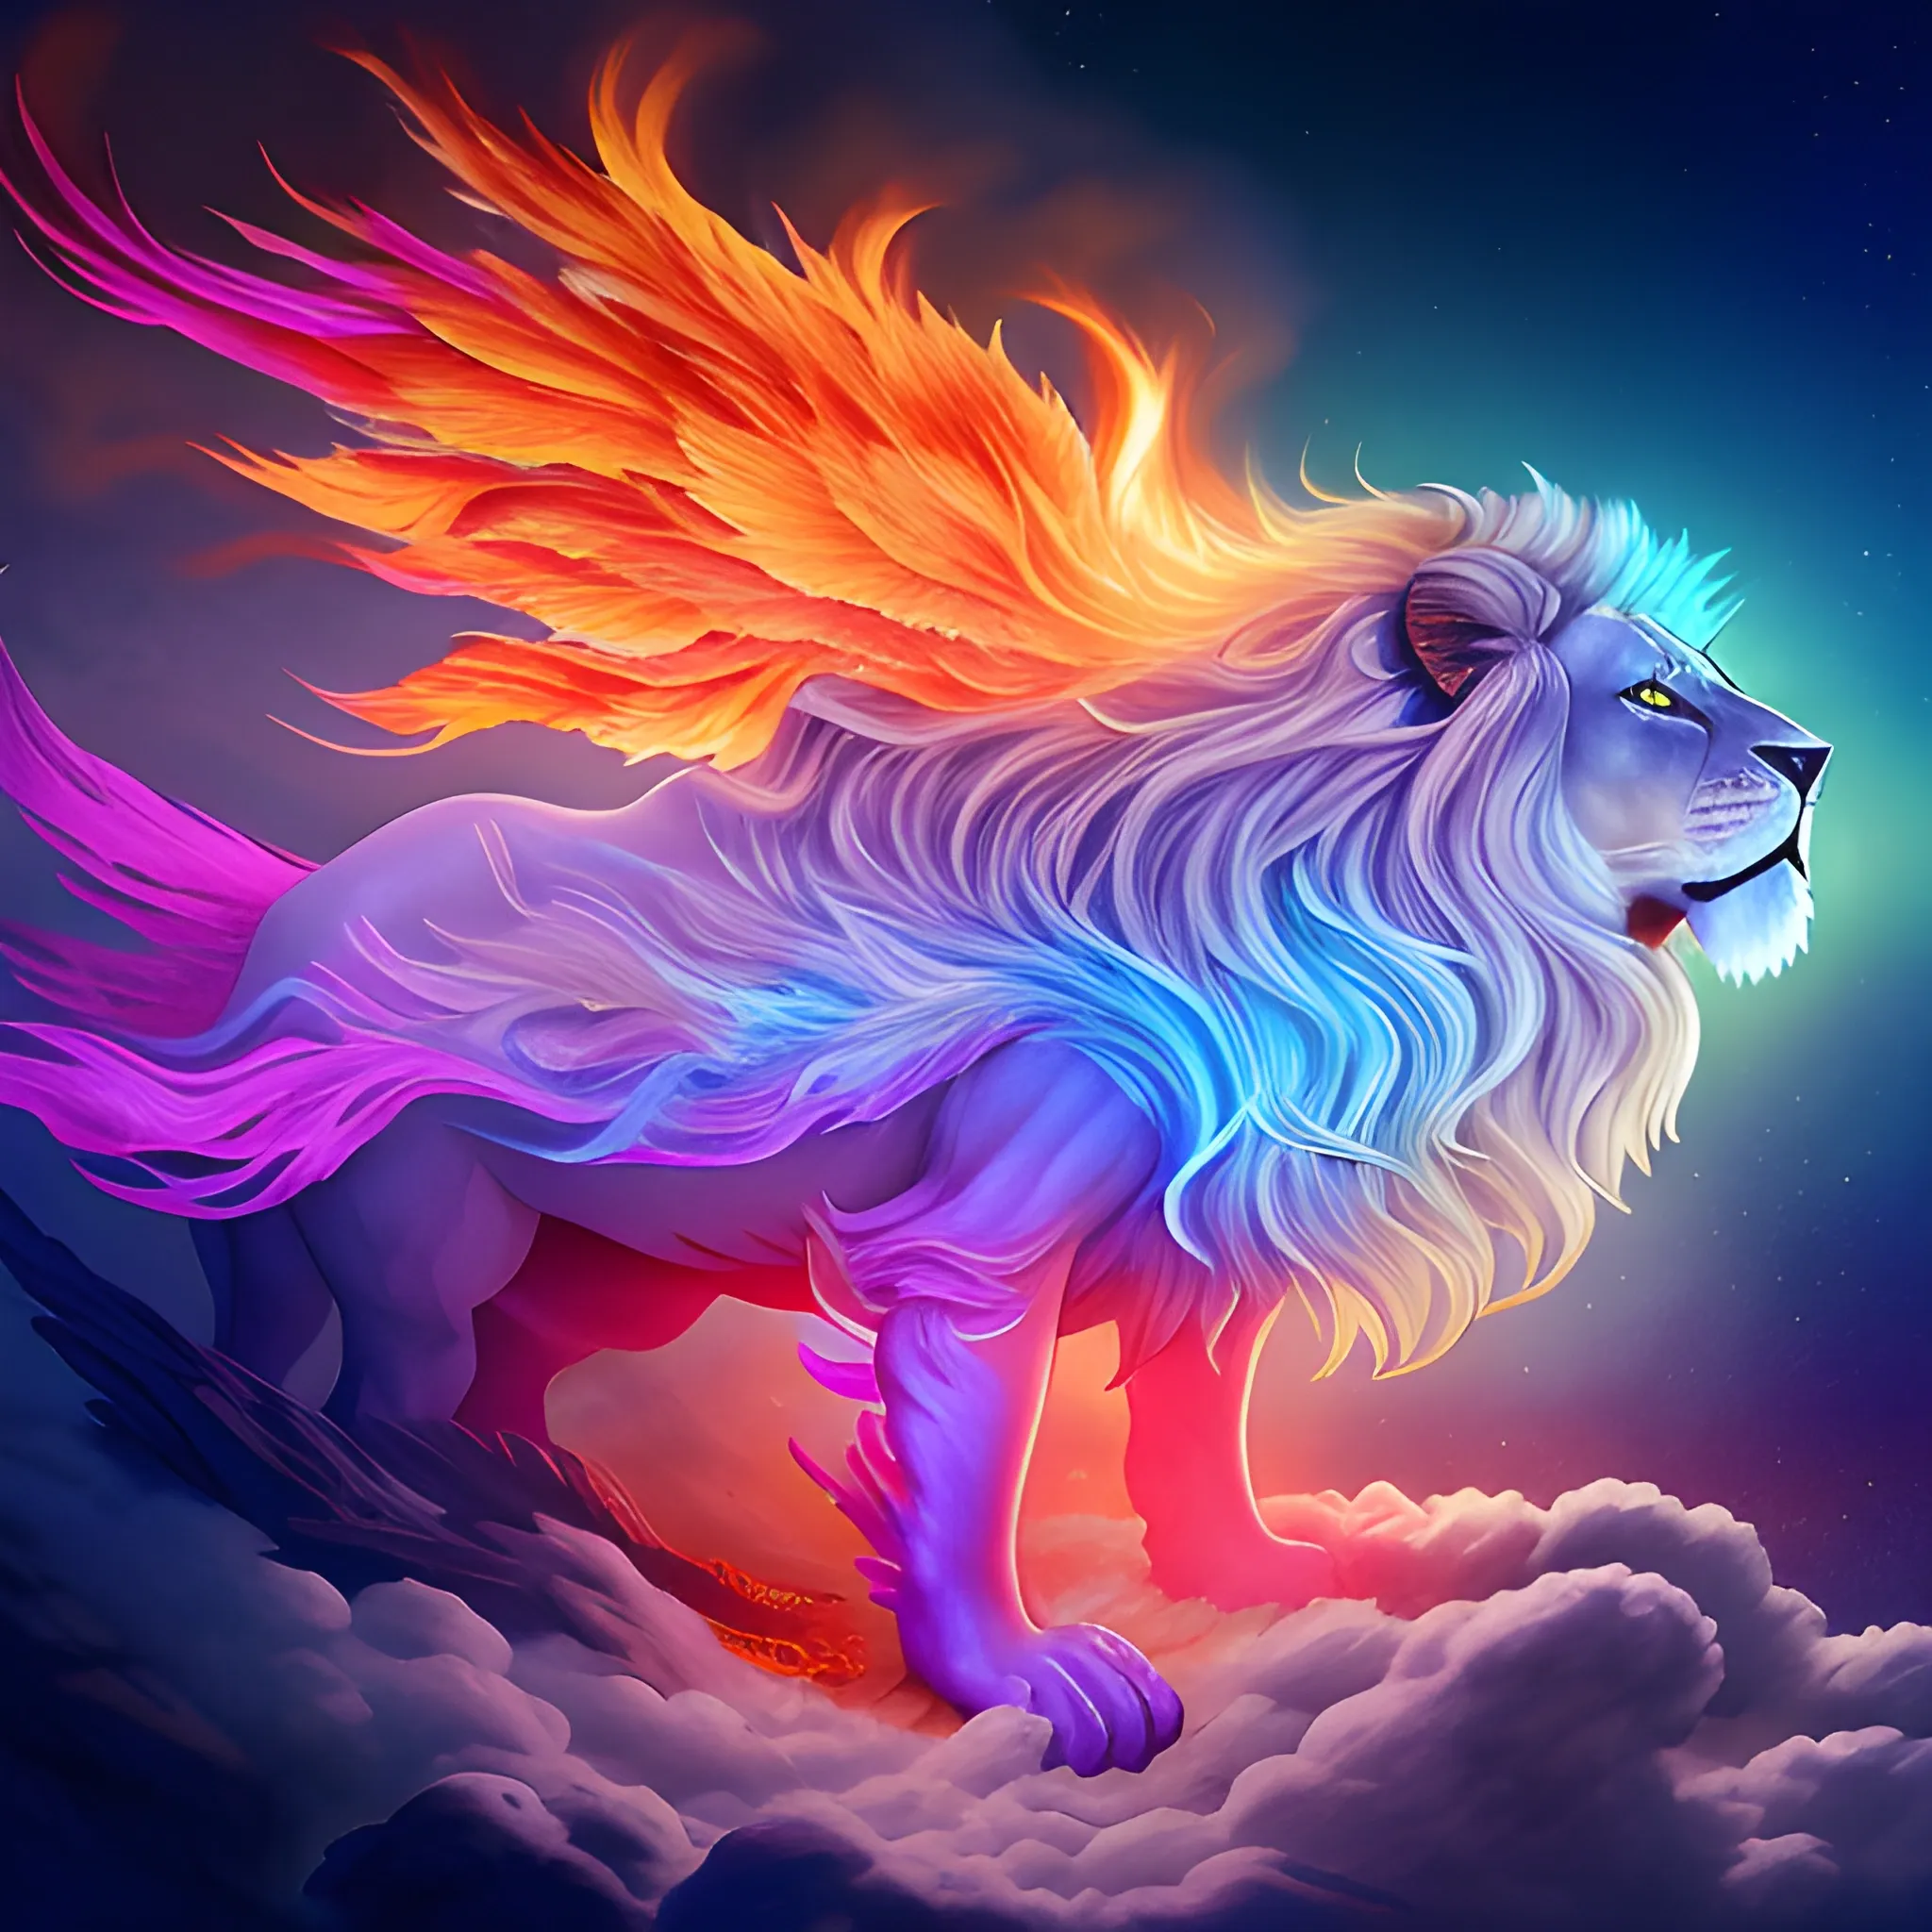 lion spectral de feu doré avec une crinière flamboyante et des ailes de plumes étincellantes  survolant un océan translucide peuplé de poissons multicolores des nuages orageux en arrière plan et un soleil rougeoyant couchant à l'horizon 